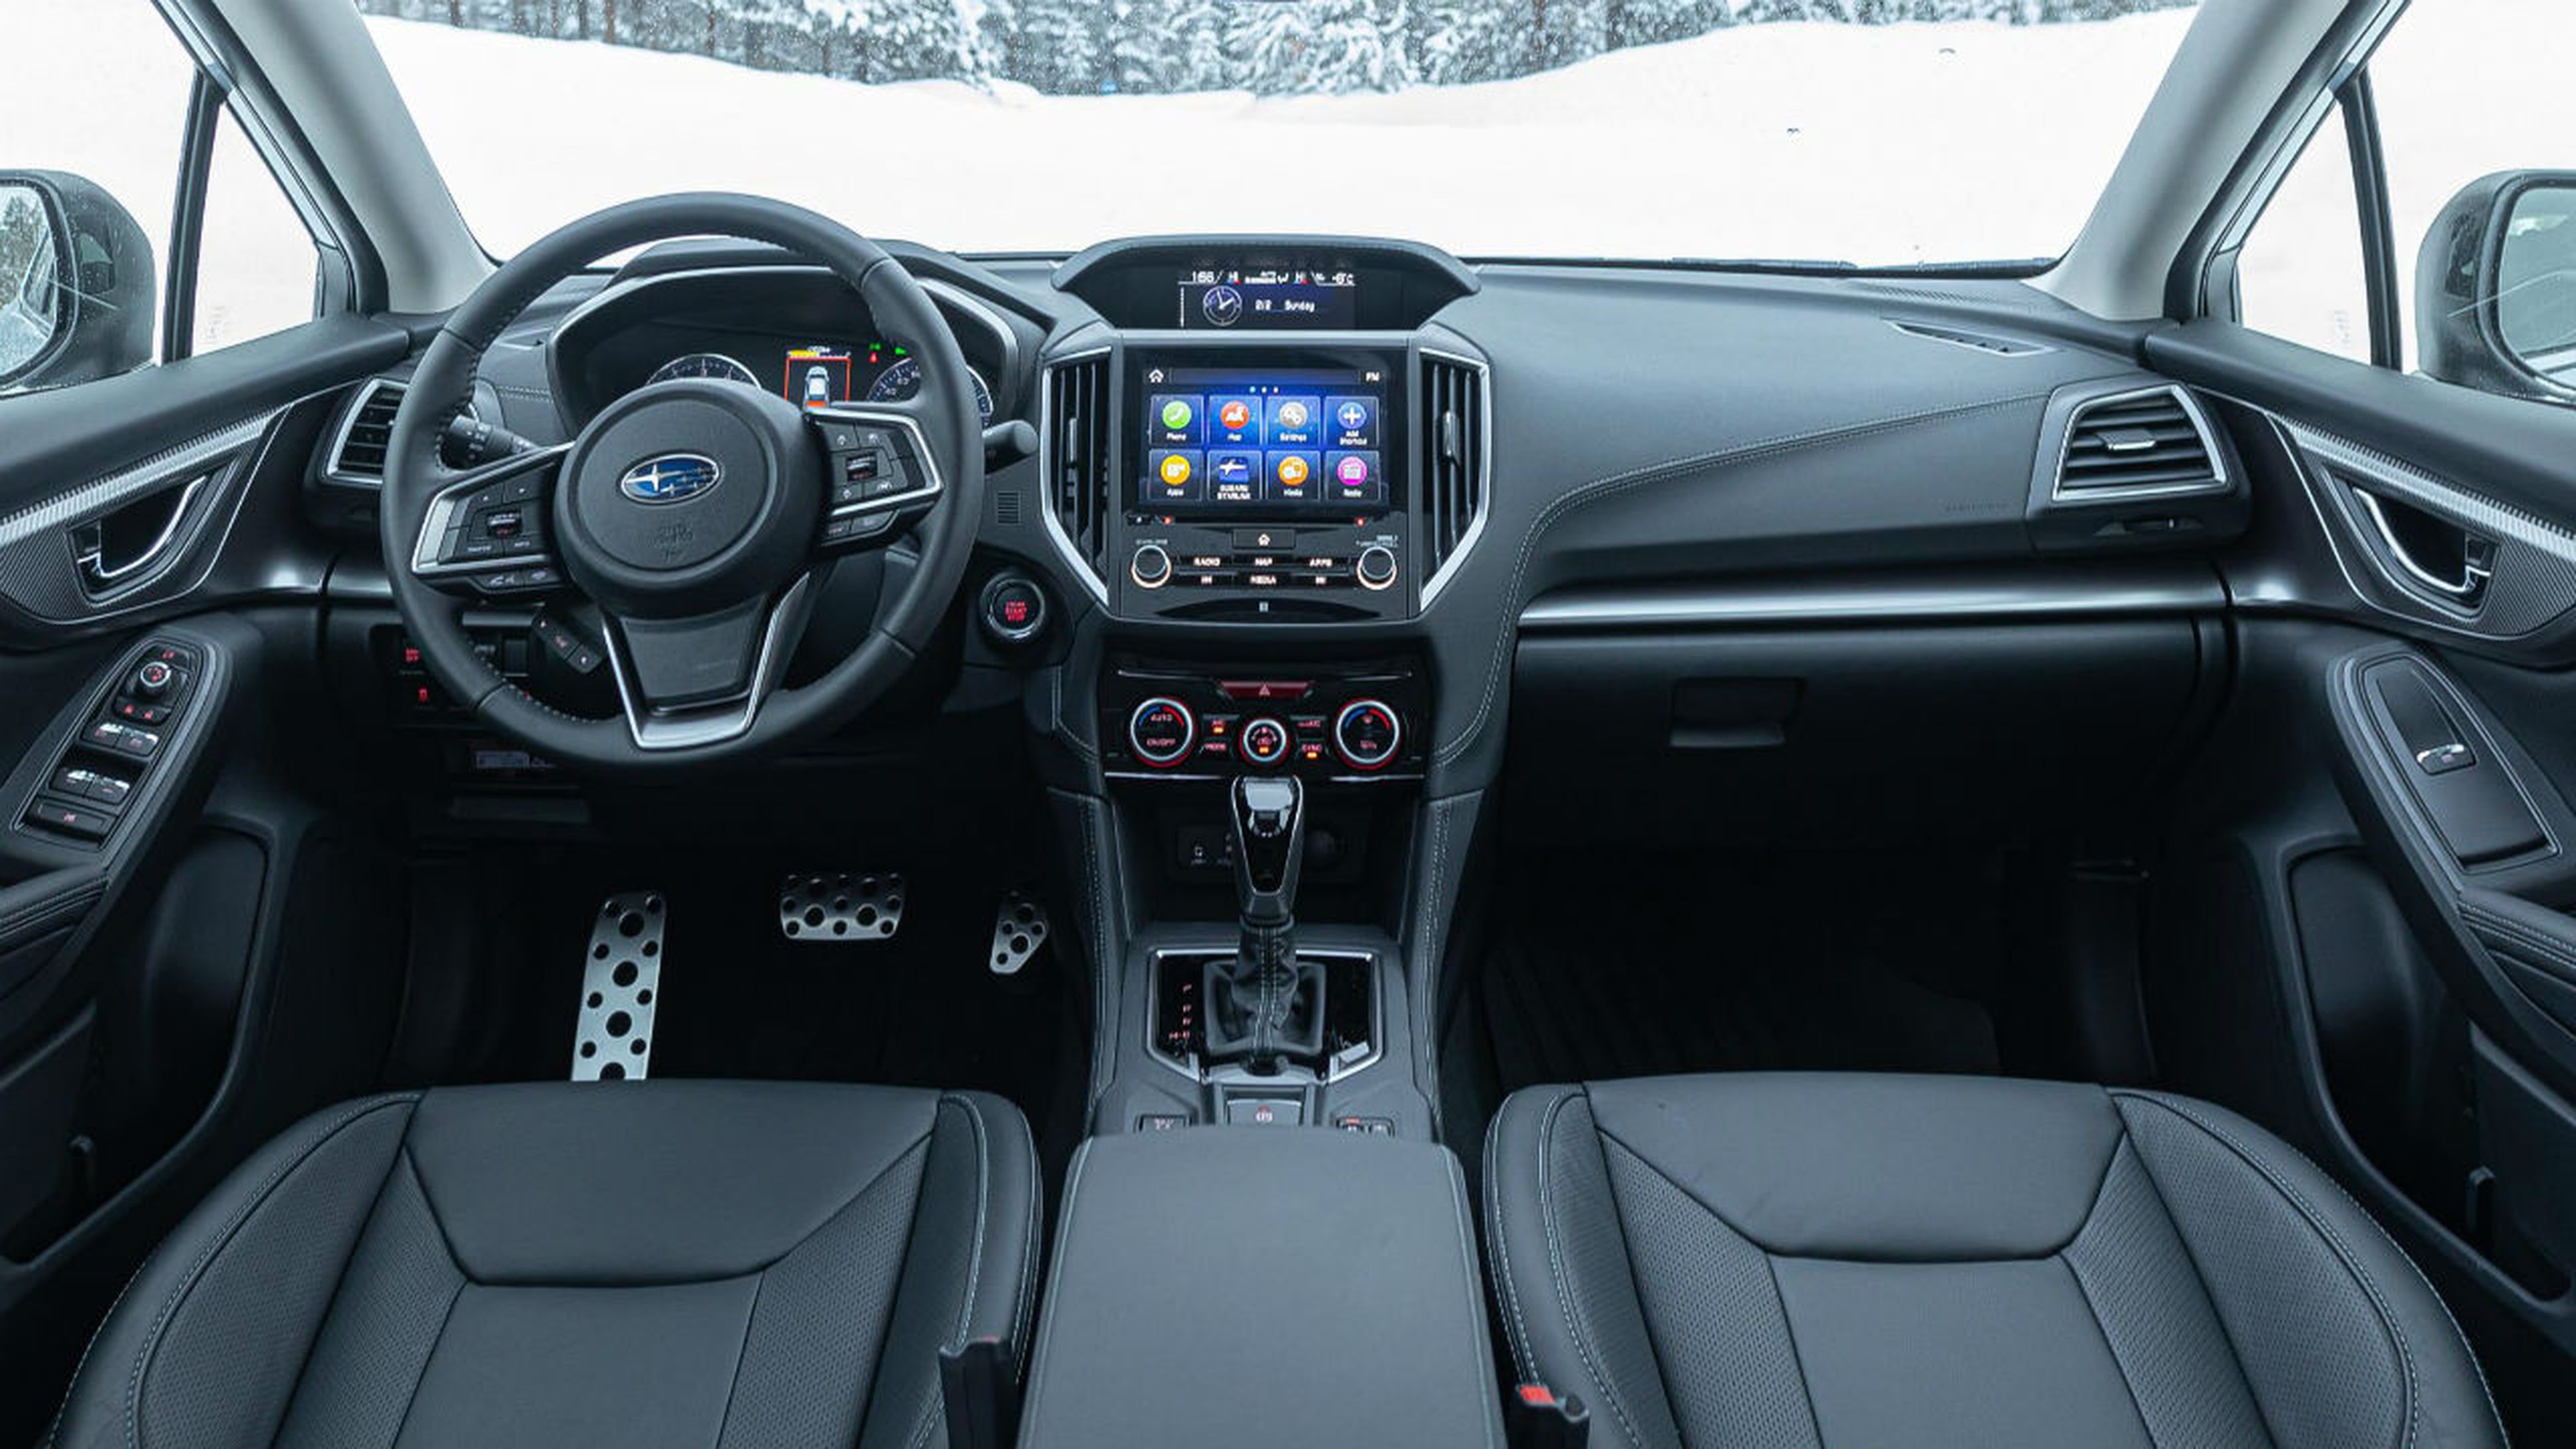 Así es el interior del Subaru Impreza Eco Hybrid 2020.